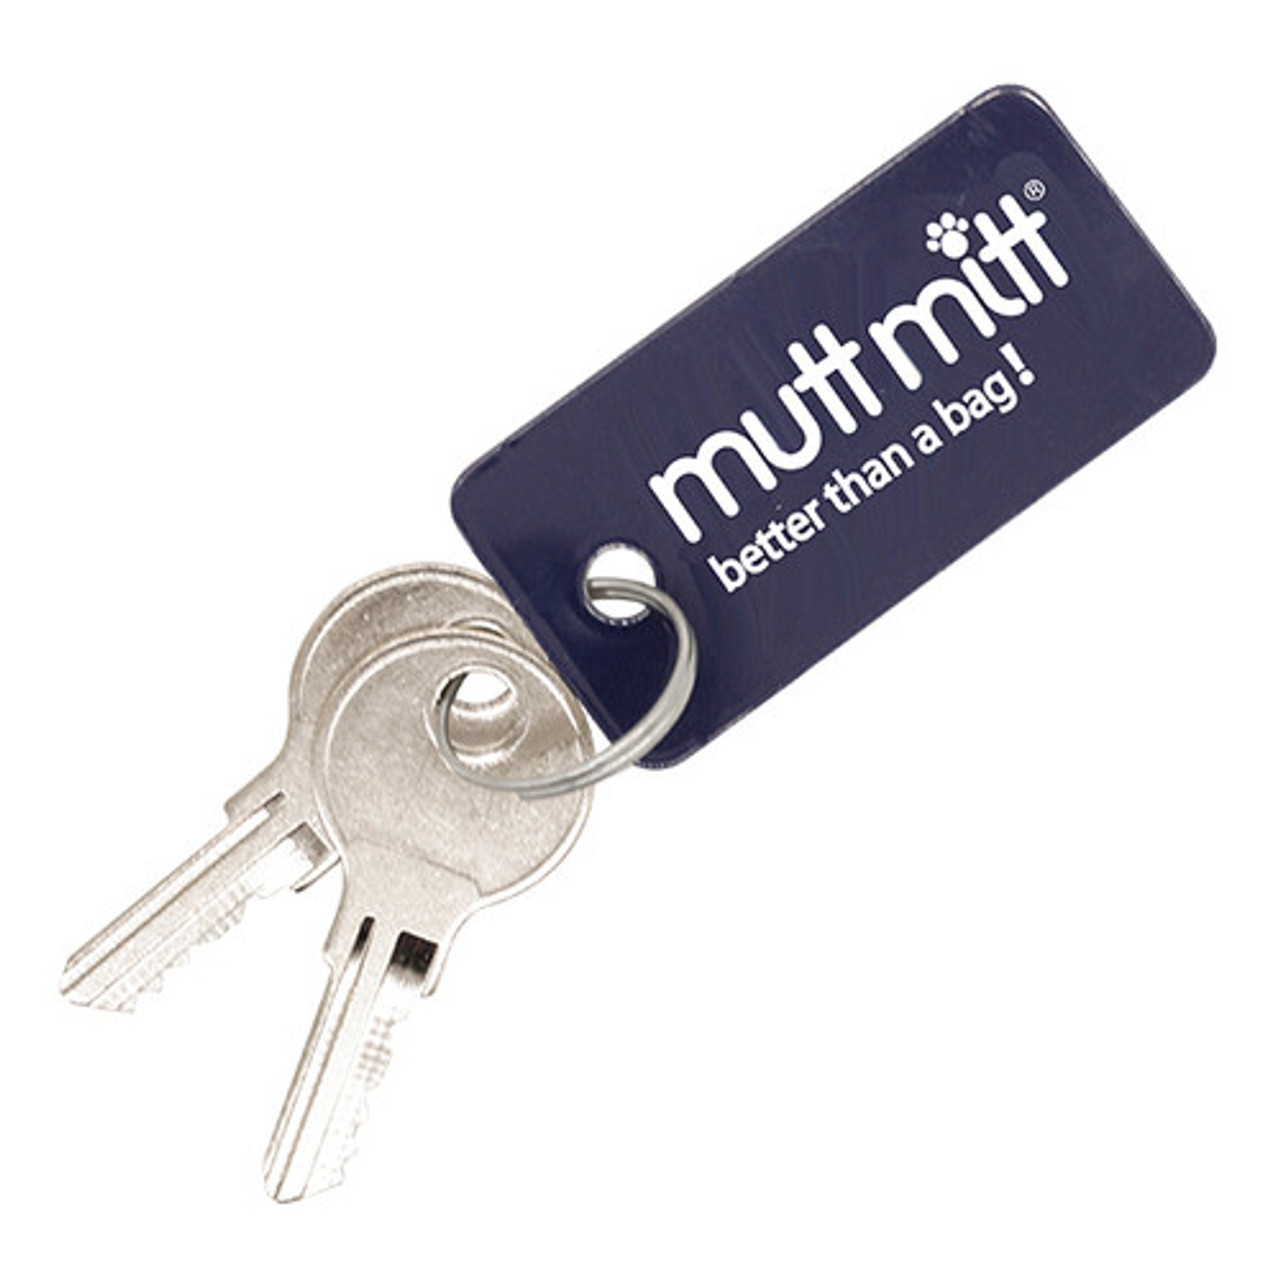 Mutt Mitt Station Keys -Replacement Set